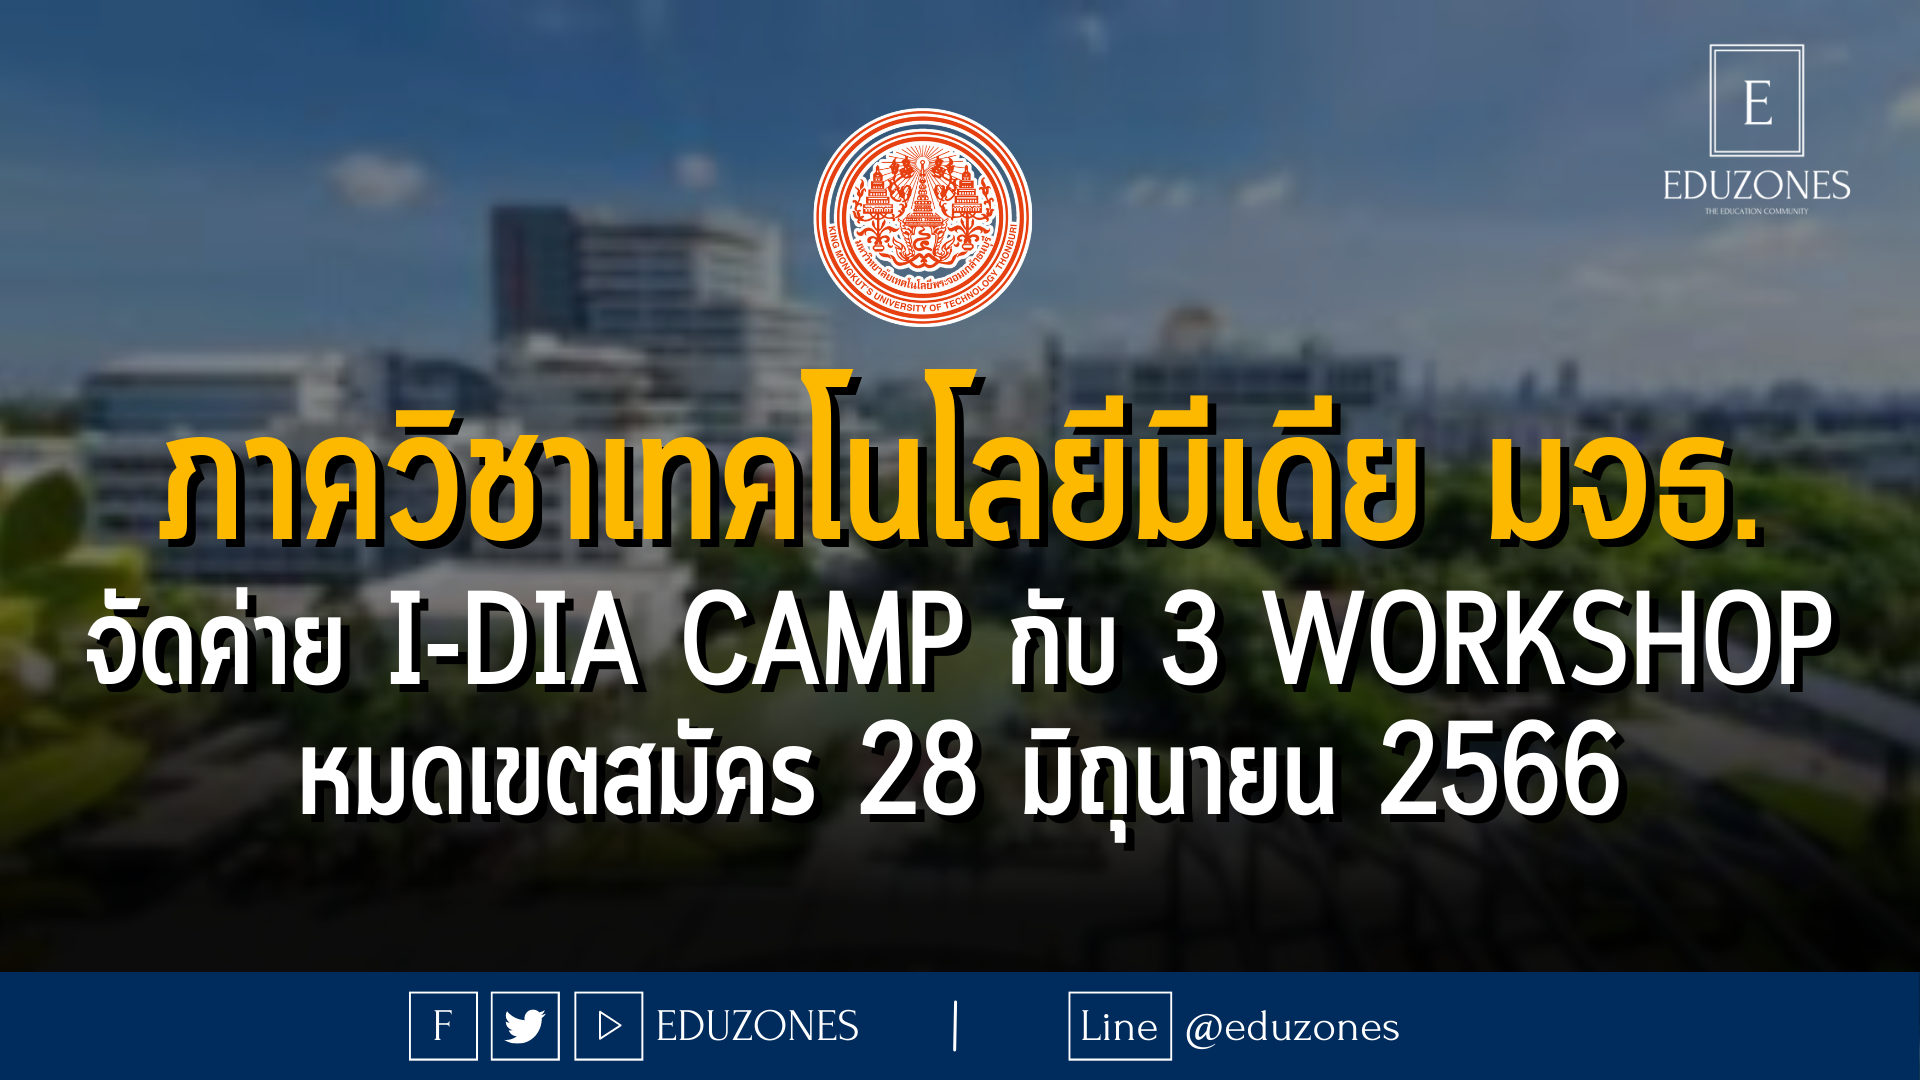 ภาควิชาเทคโนโลยีมีเดีย มหาวิทยาลัยเทคโนโลยีพระจอมเกล้าธนบุรี จัดค่าย I-Dia Camp กับ 3 Workshop หมดเขตสมัคร 28 มิถุนายน 2566